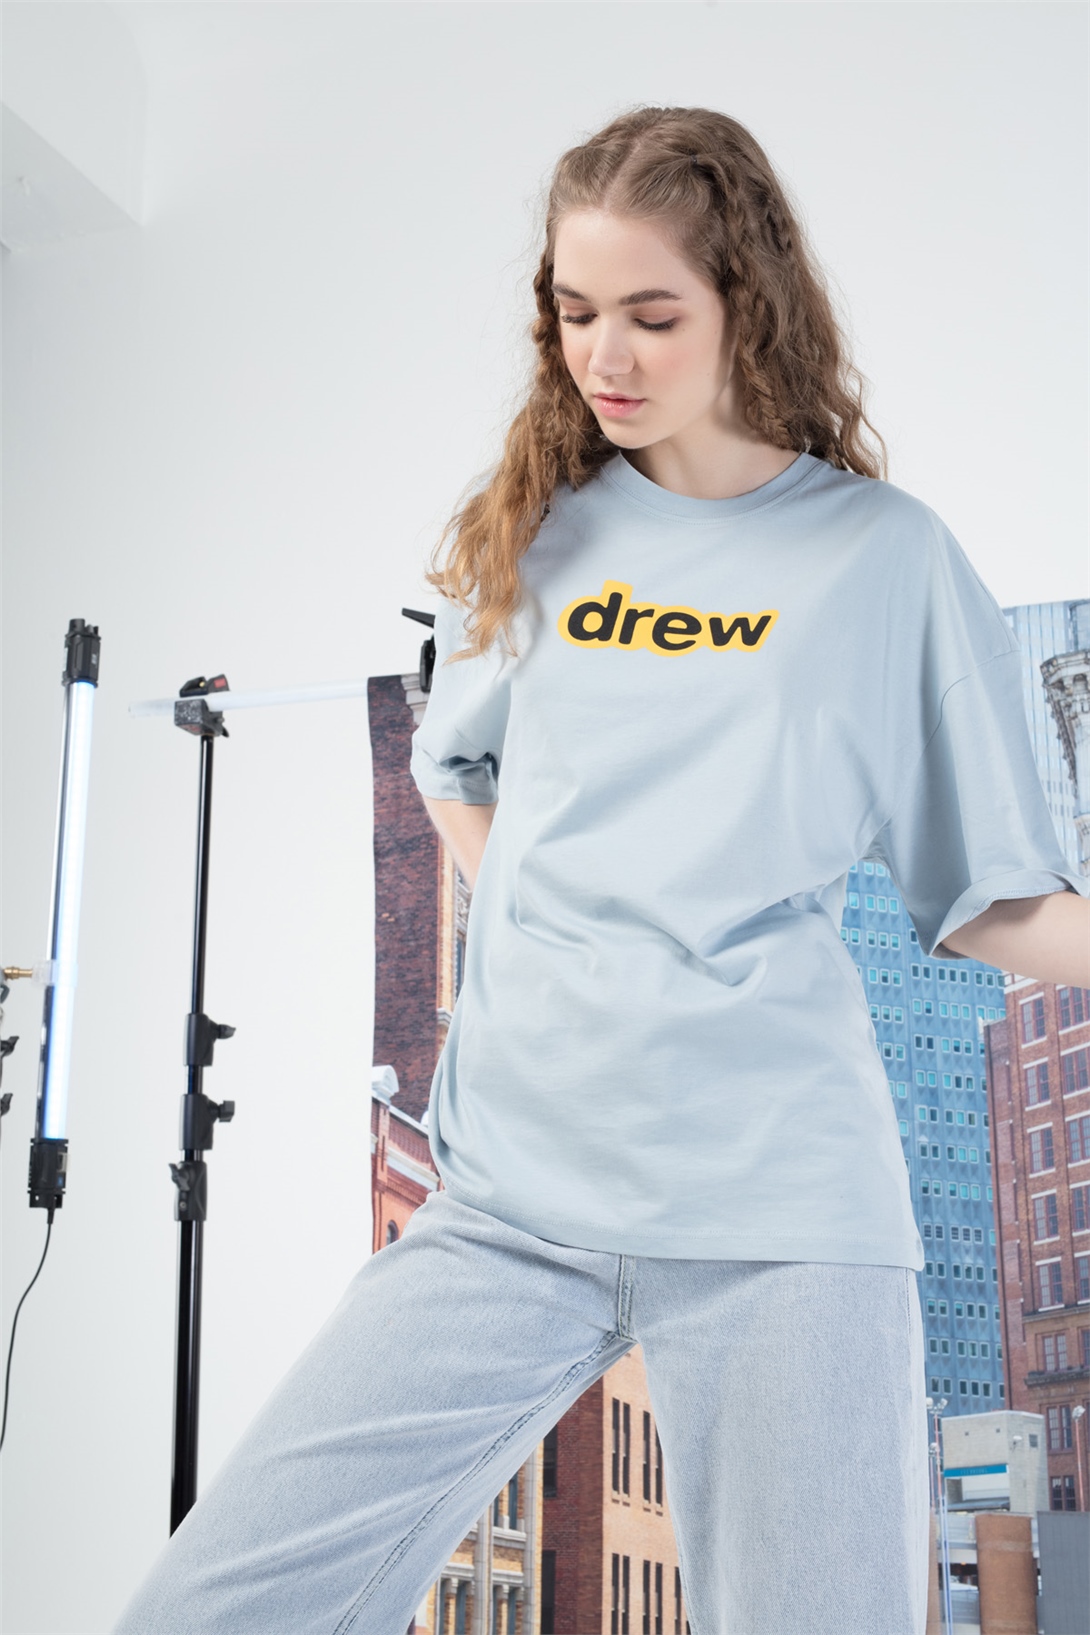 Trendiz Kadın Drew yazı Tshirt Açık Mavi